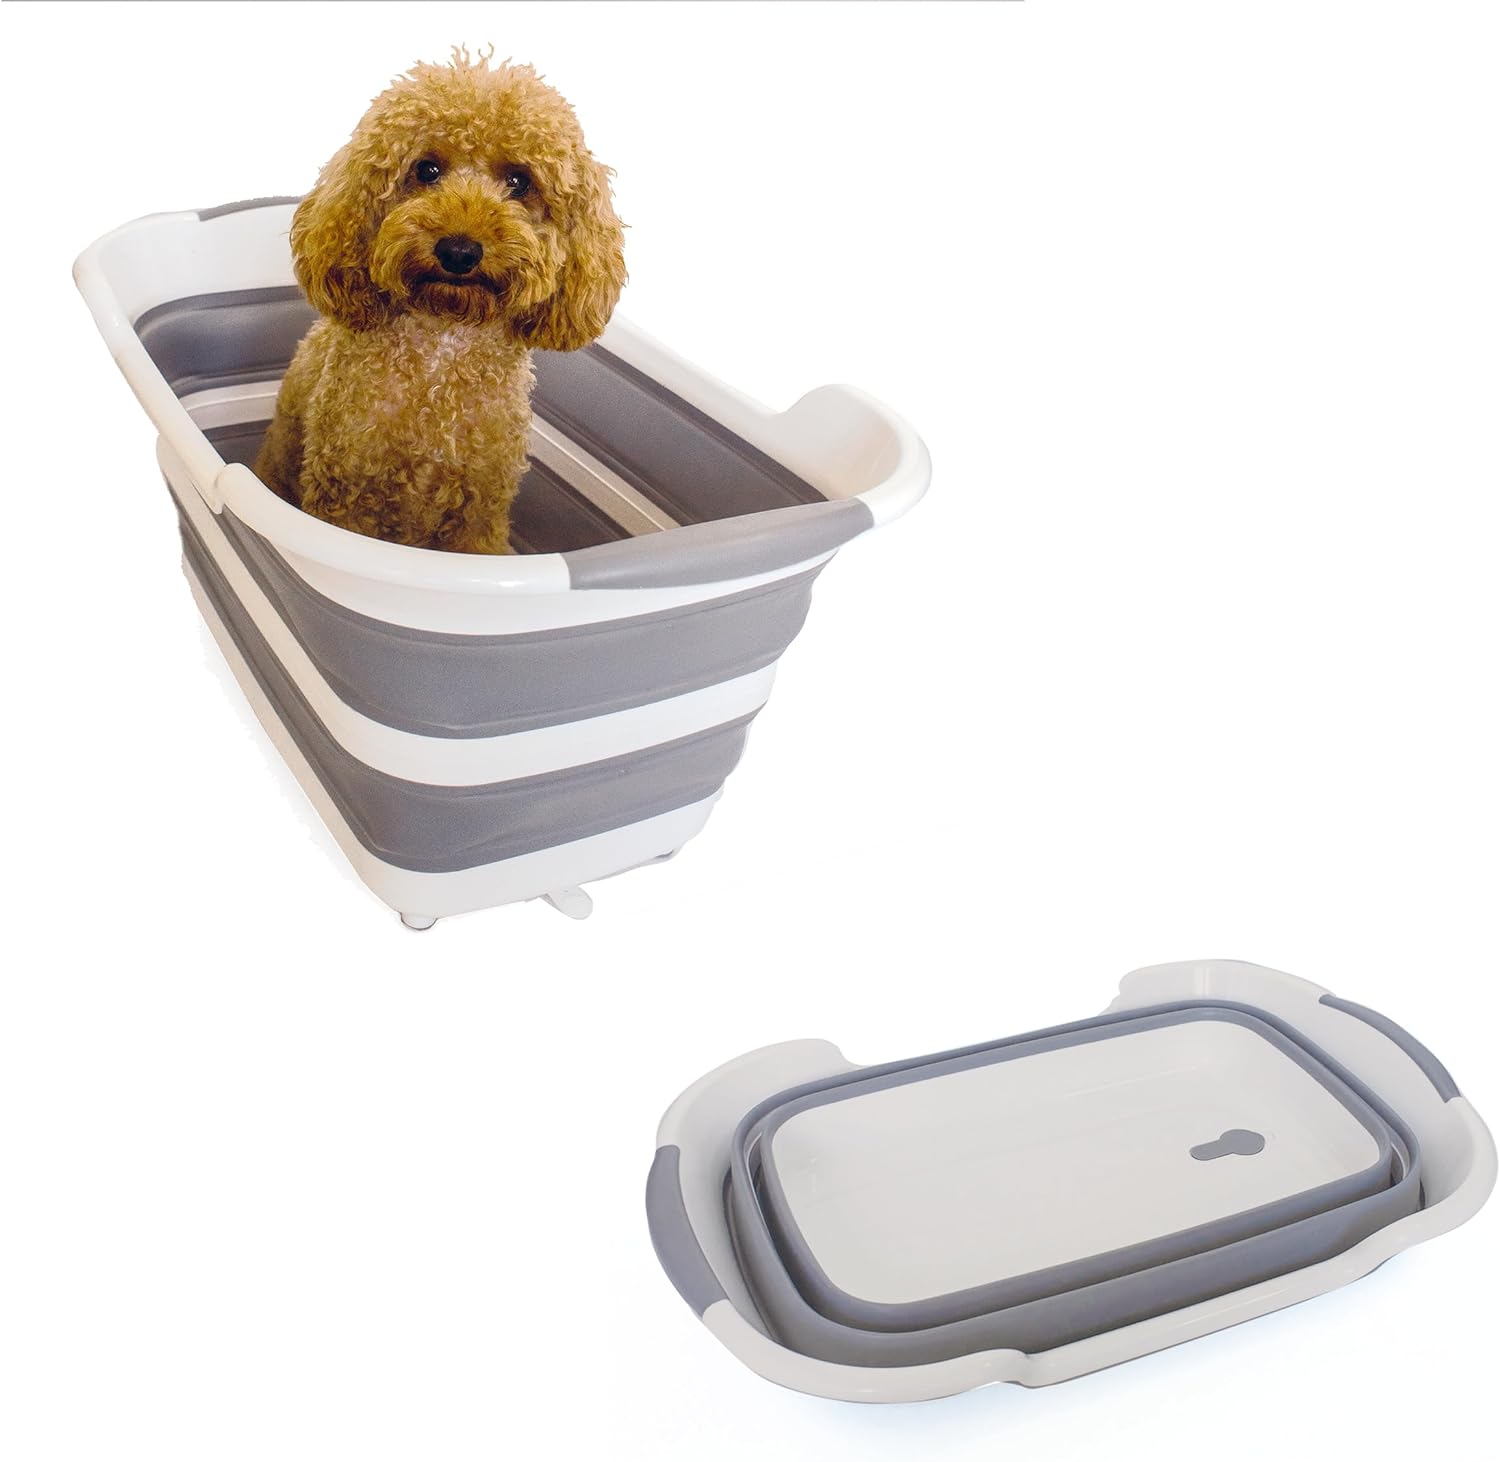 FluffySmileer 7.2Gal Dog Bathtub for Small and Medium Pets